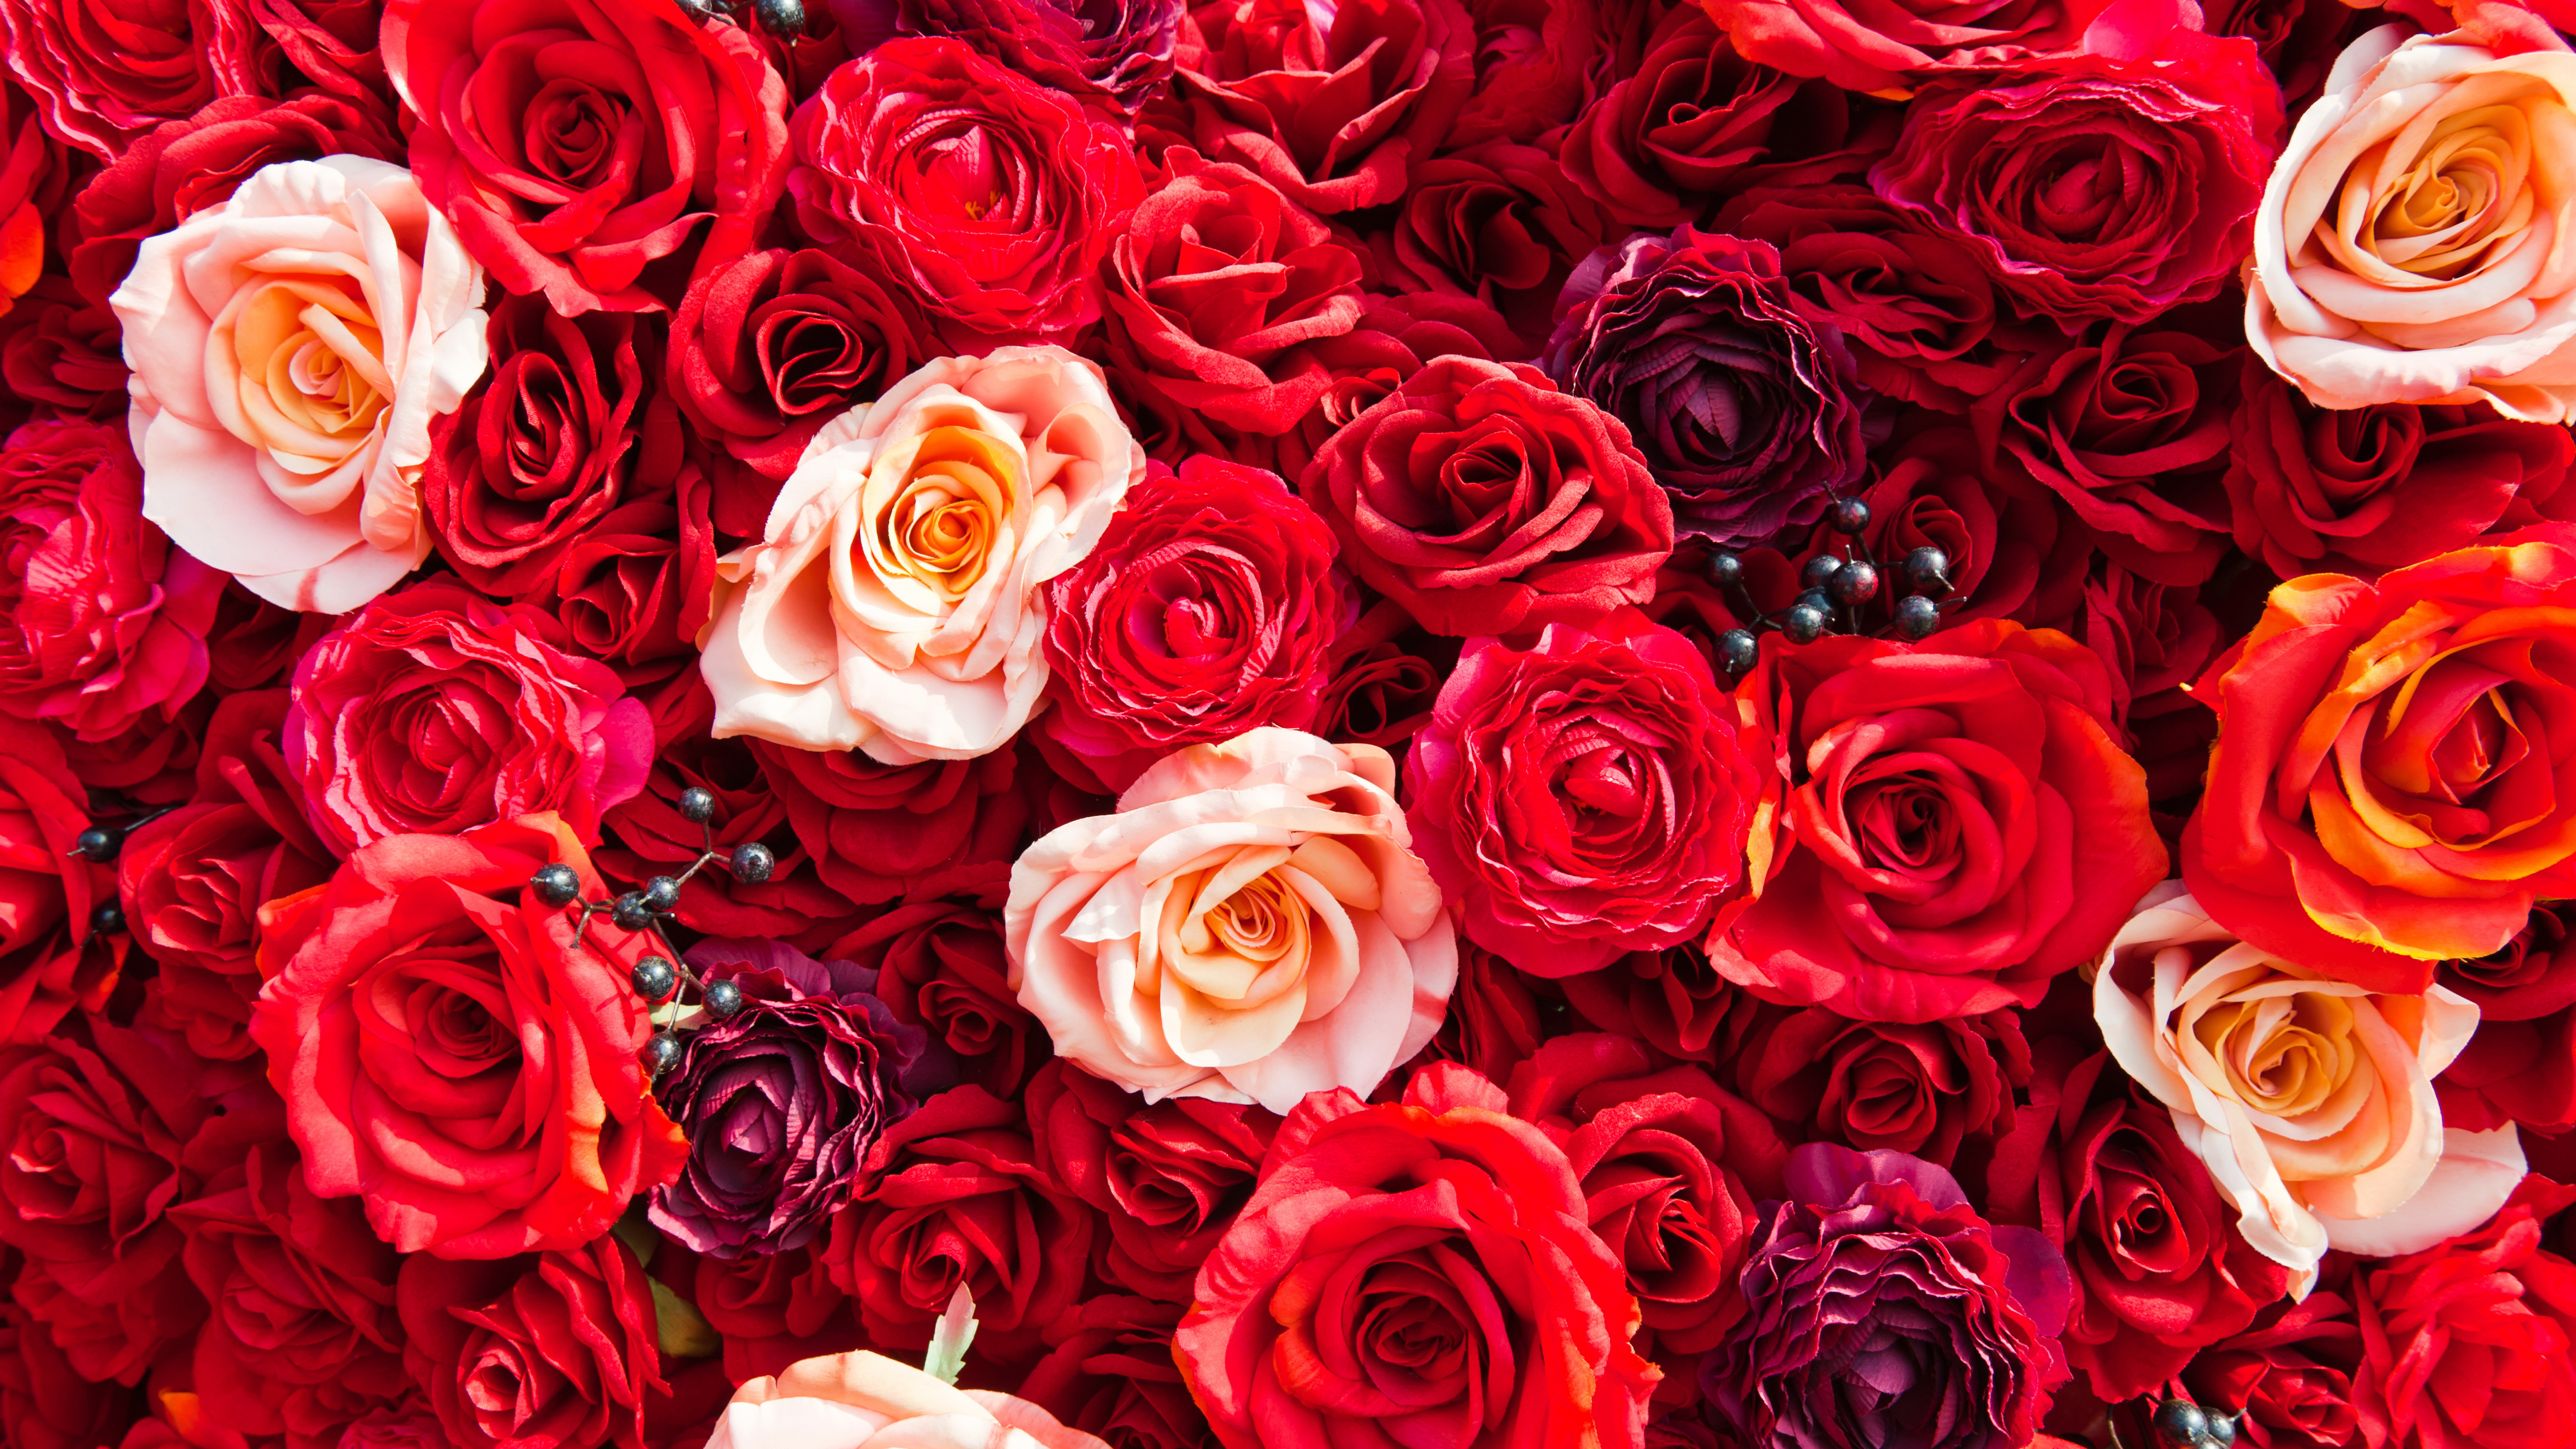 玫瑰花园, 红色的, 玫瑰家庭, 切花, 创造性的艺术 壁纸 7680x4320 允许